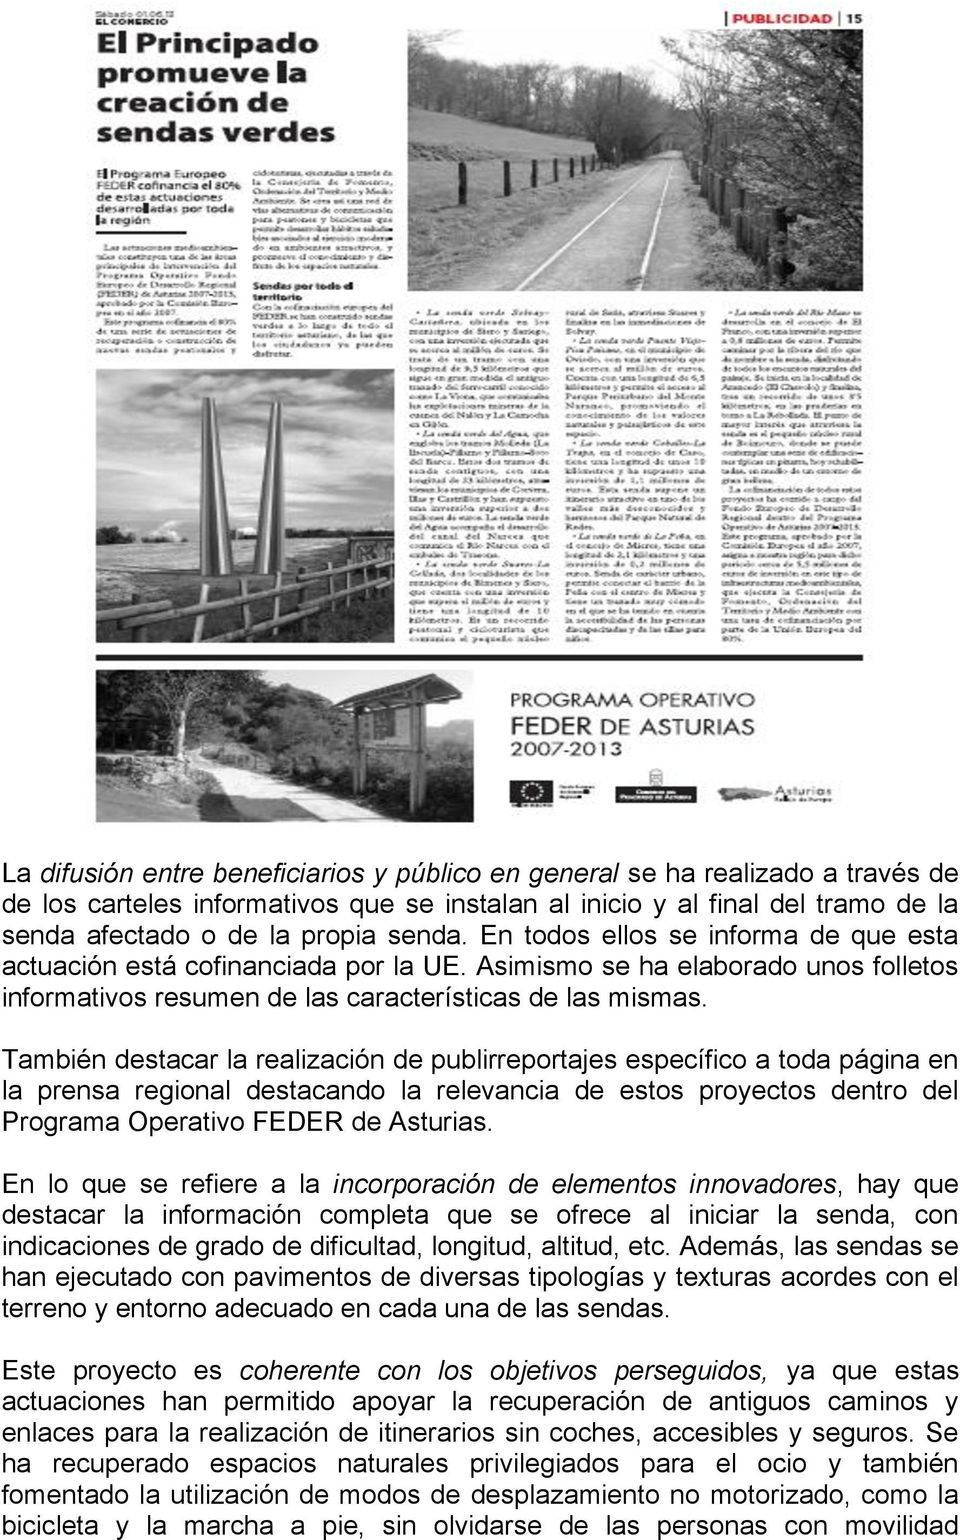 También destacar la realización de publirreportajes específico a toda página en la prensa regional destacando la relevancia de estos proyectos dentro del Programa Operativo FEDER de Asturias.